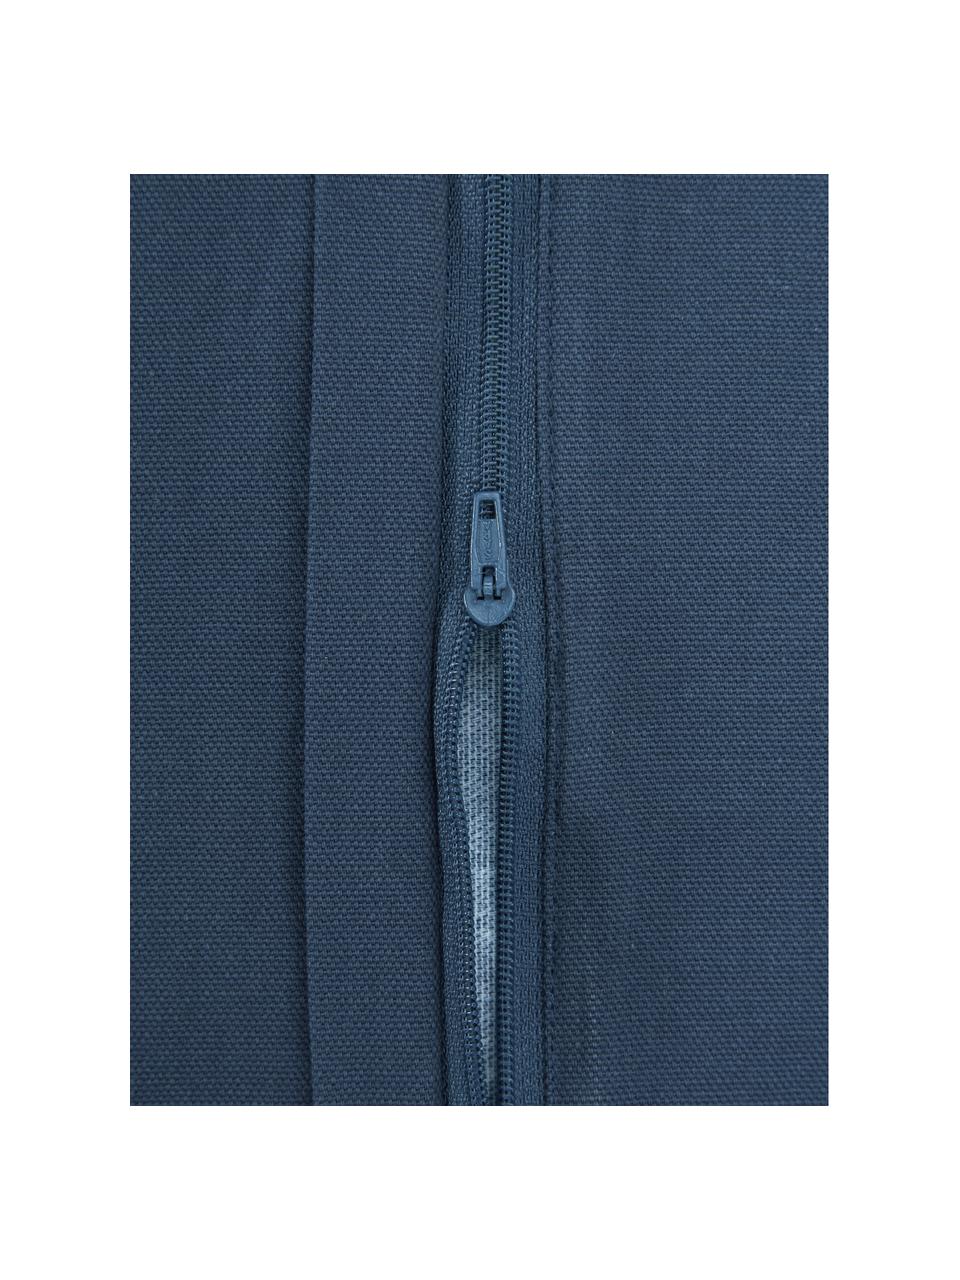 Poszewka na poduszkę Gracia, 100% bawełna, Niebieski, S 40 x D 40 cm